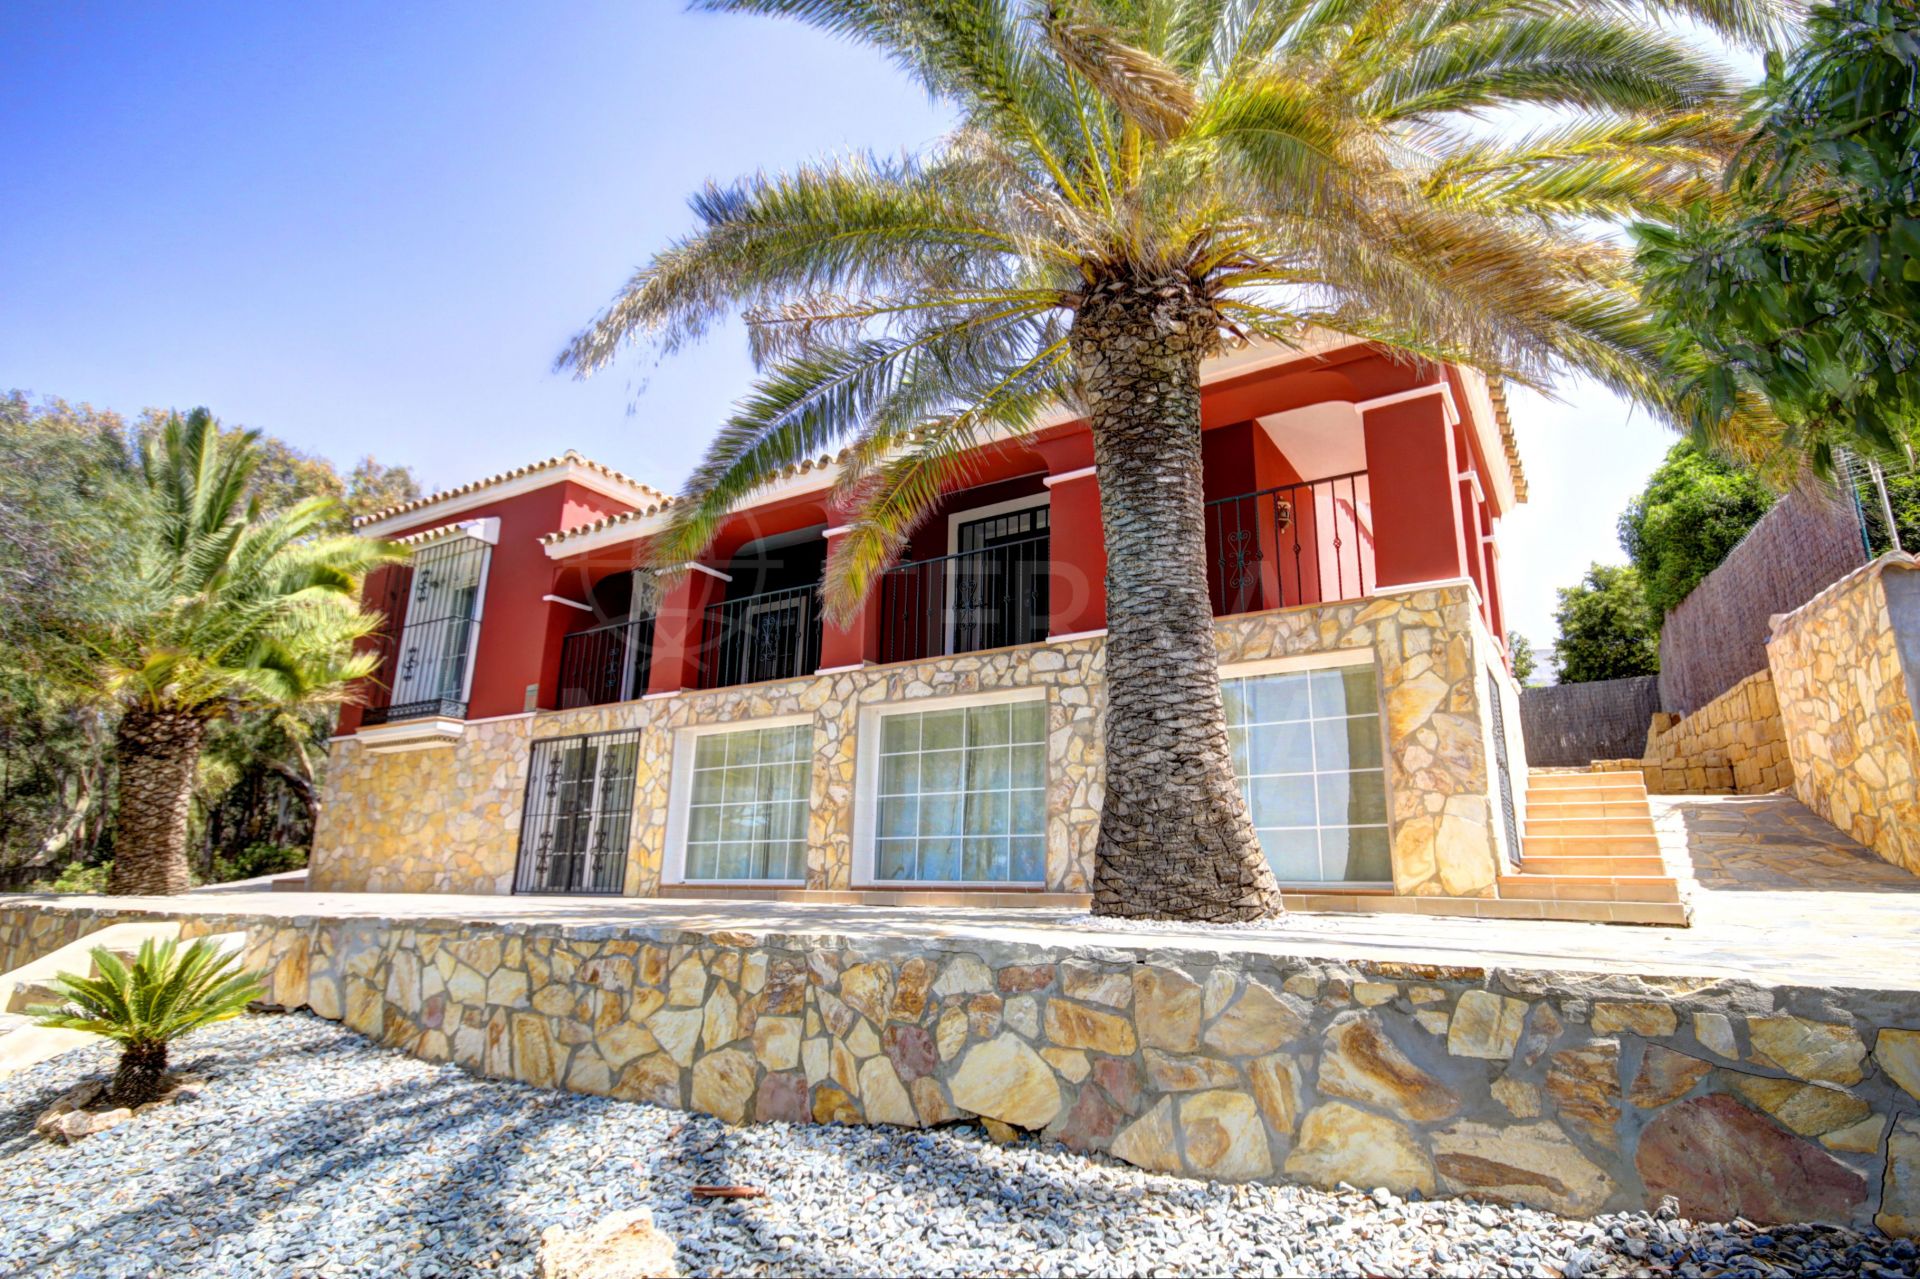 Villa de estilo mediterráneo en primera línea de playa en alquiler en Sabinillas